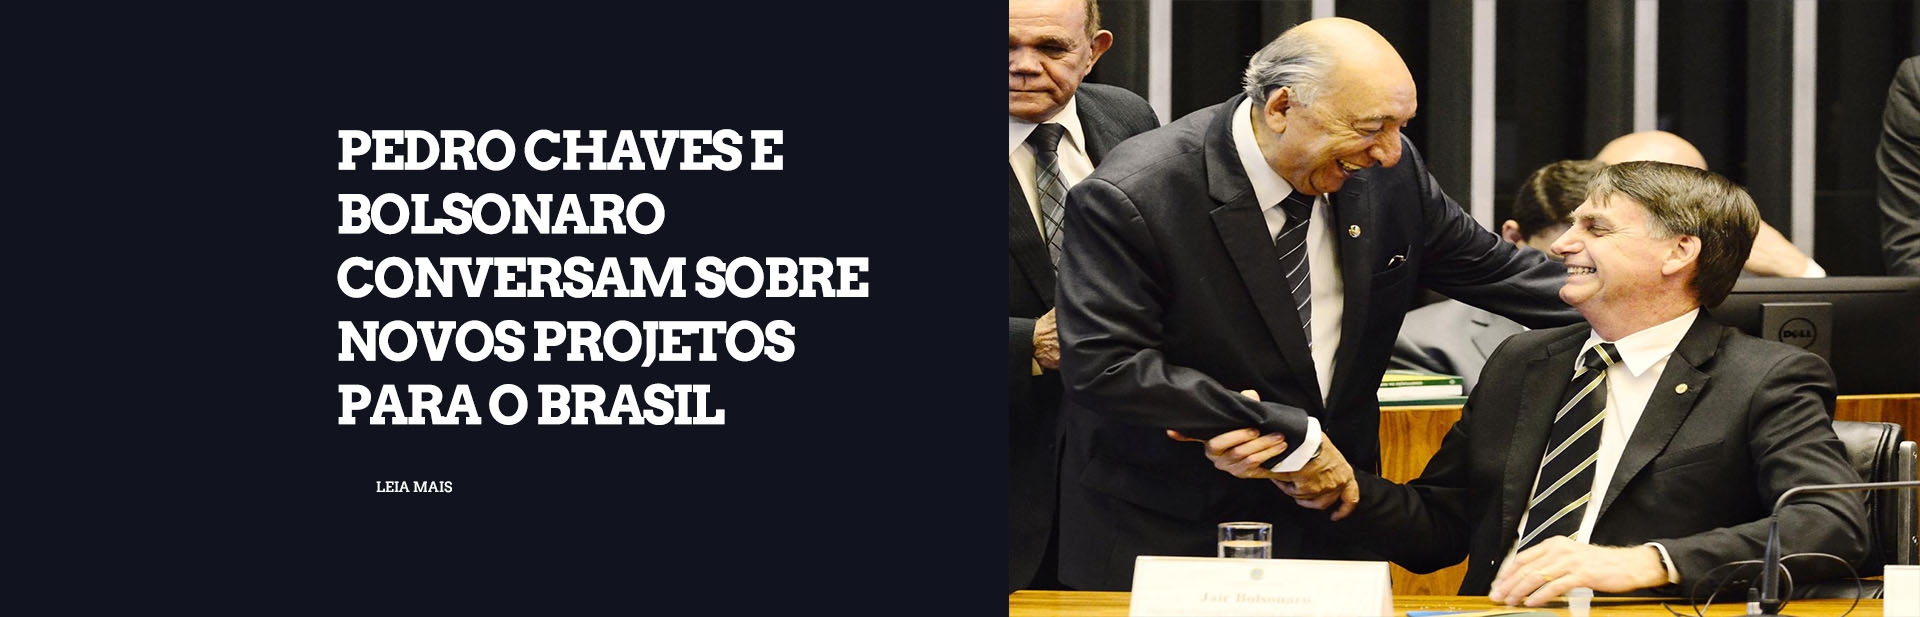 Pedro Chaves e Bolsonaro conversam sobre novos projetos para o Brasil